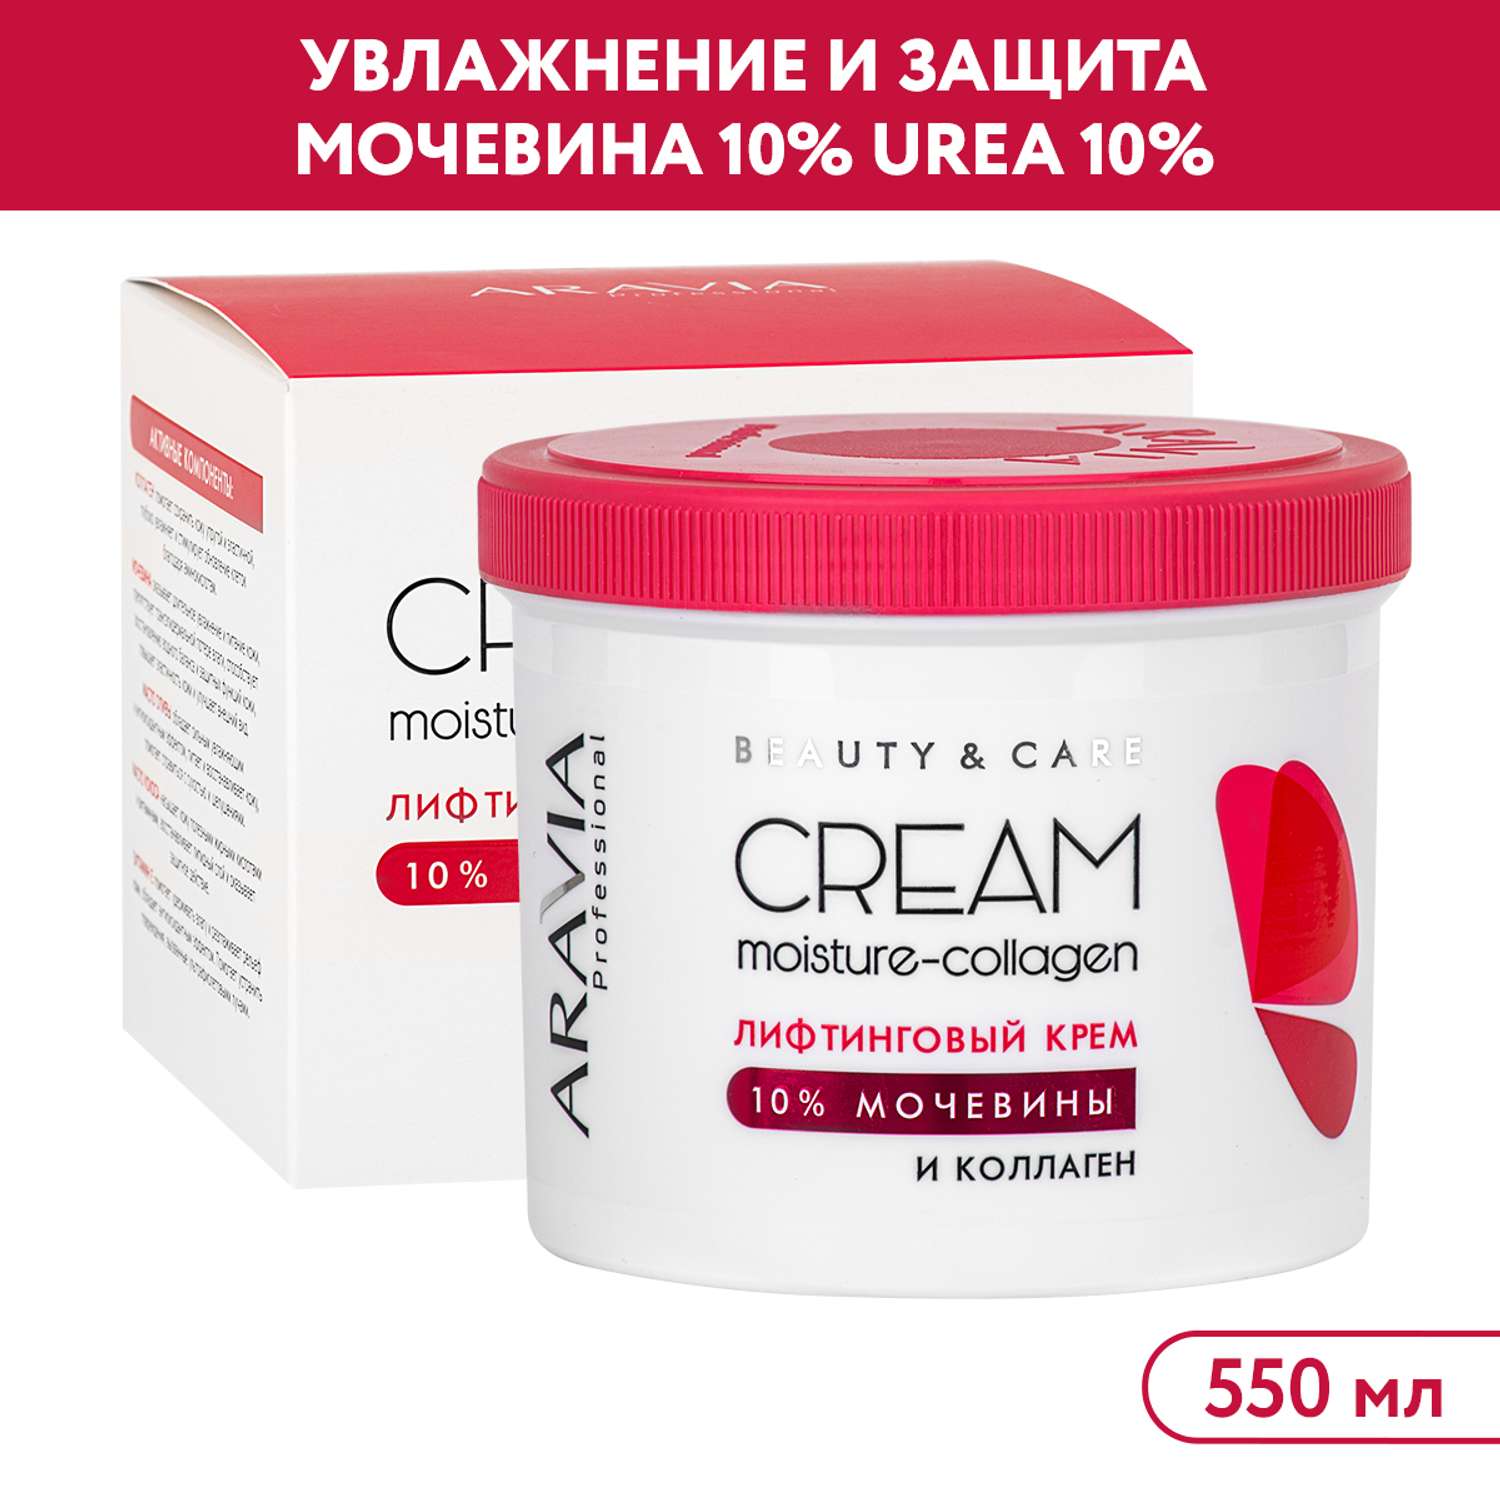 Крем для лица ARAVIA Professional лифтинговый с коллагеном и мочевиной 10% Moisture-Collagen Cream - фото 1